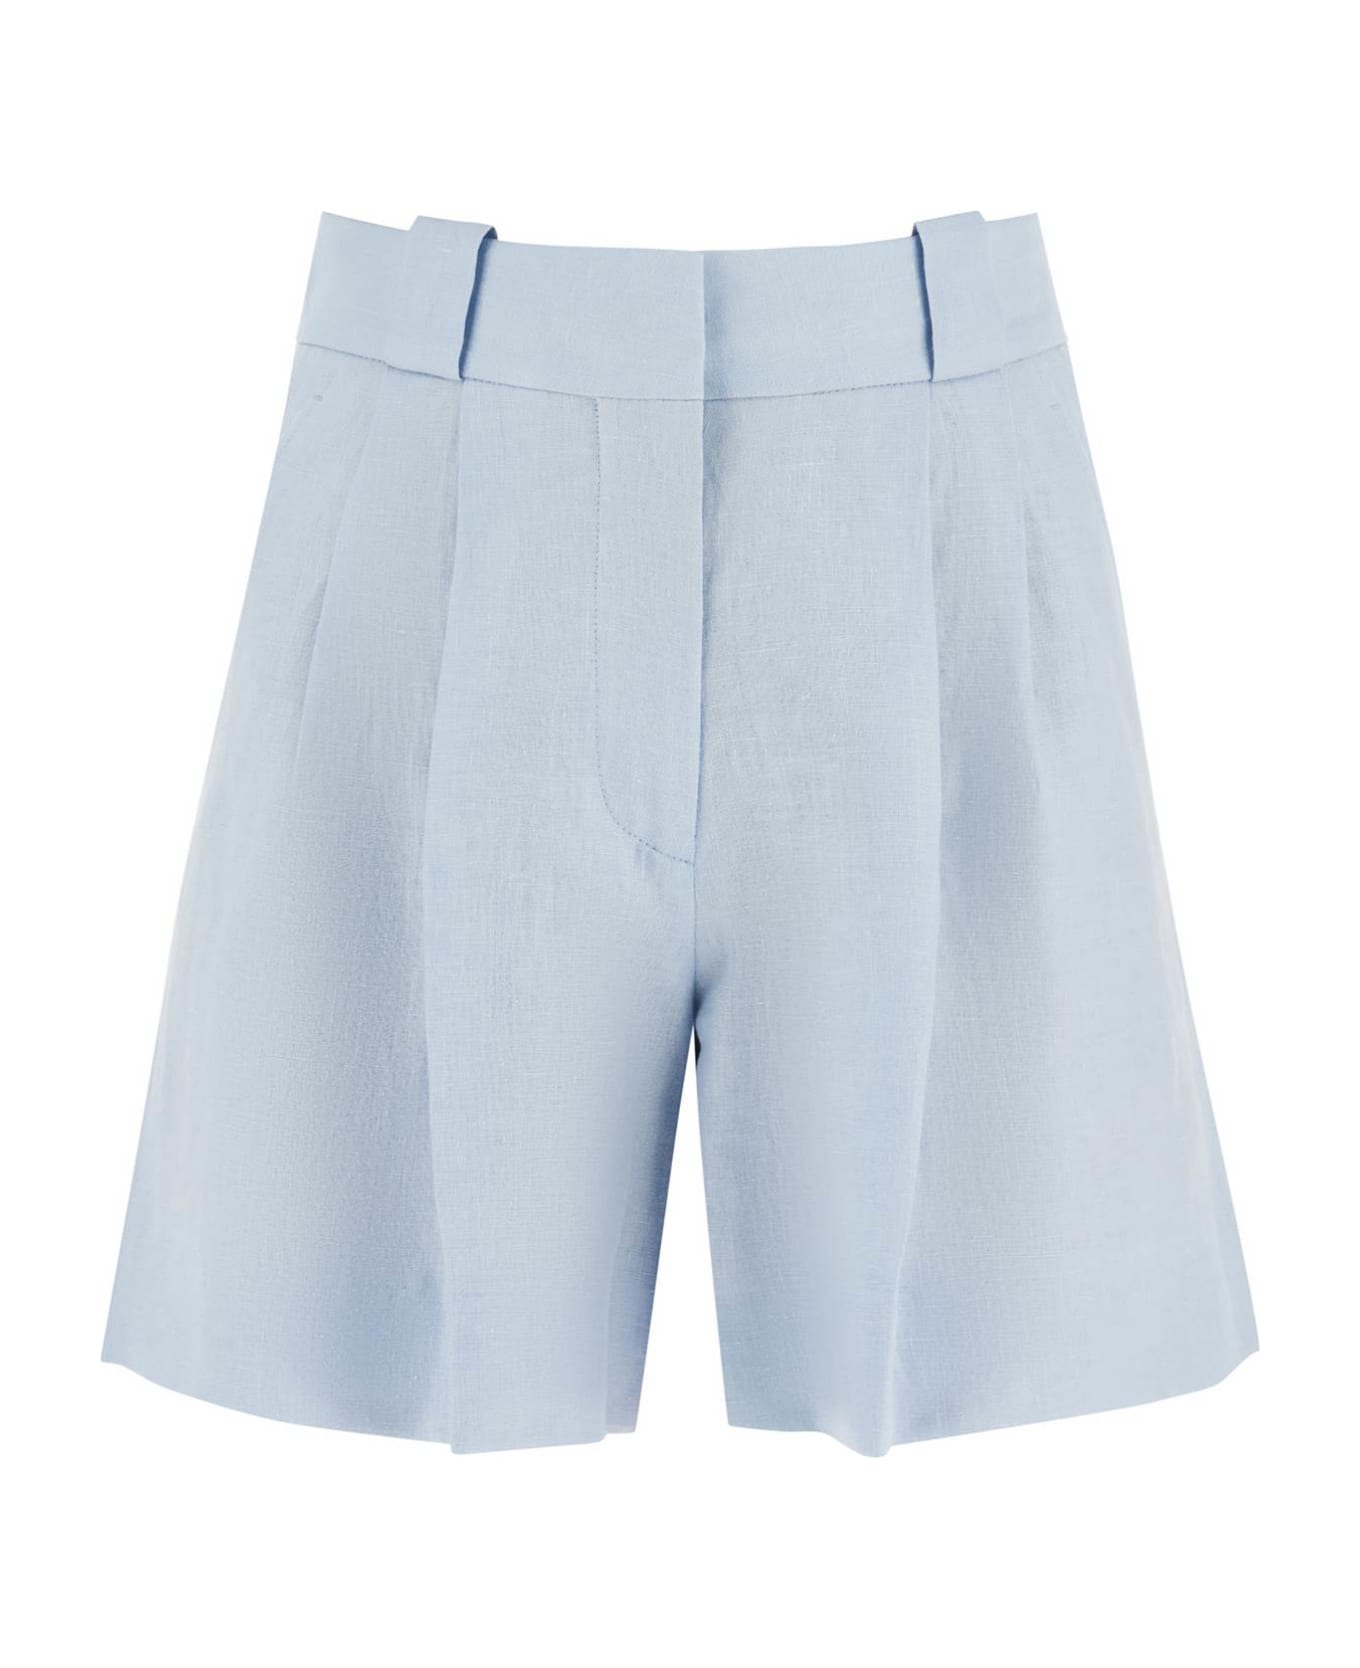 Blazé Milano 'mid Day Sun' Shorts - SKY (Light blue) ショートパンツ